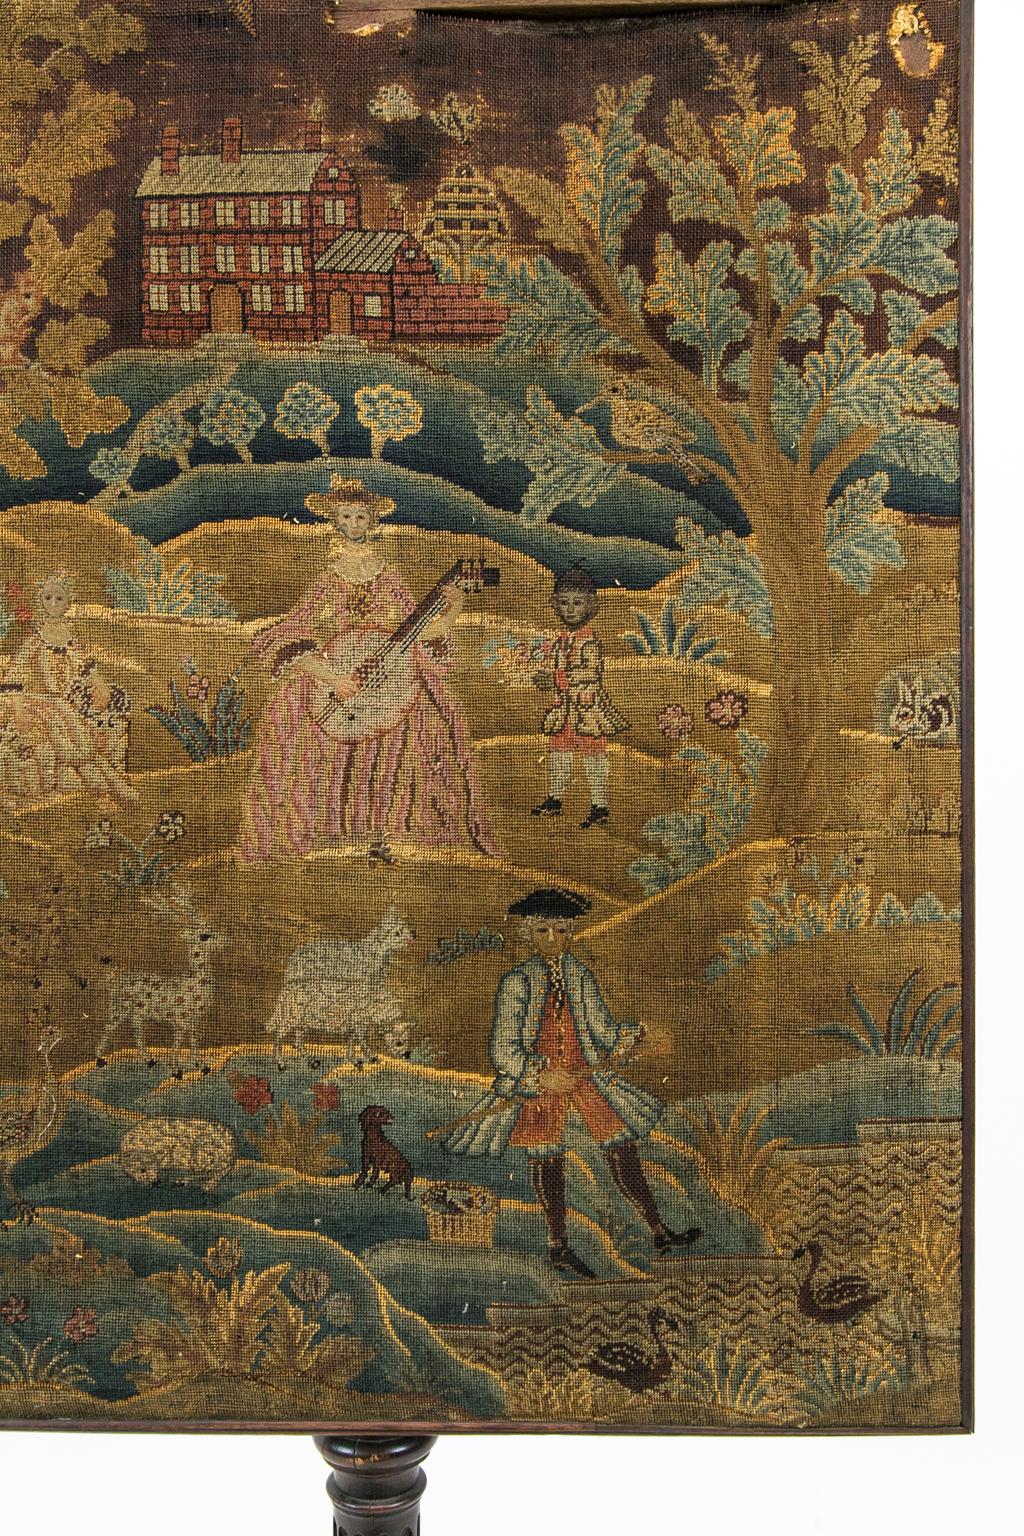 Handgearbeiteter George-III-Kaminschirm mit der Darstellung eines englischen Herrenhauses mit Hunden, Hirschen und Pfauen in einer Landschaft. Eine Frau spielt auf der Mandoline, während Kinder spielen. Die Gesichter der Figuren sind in Petit Point